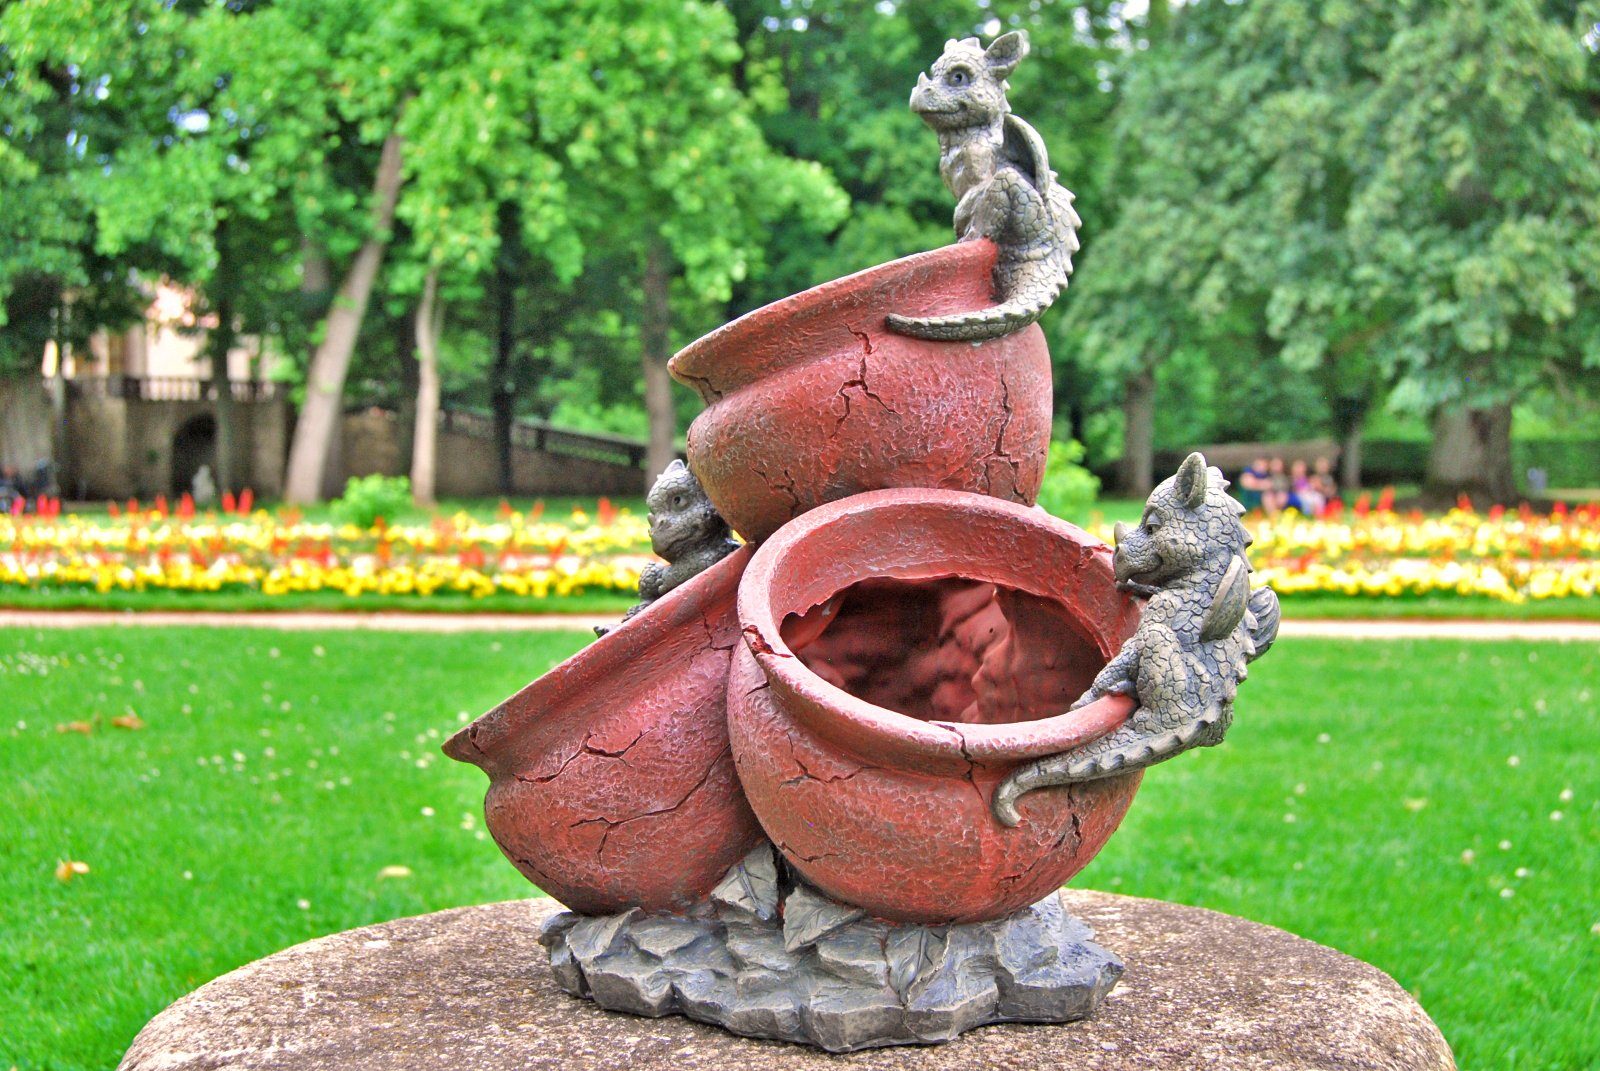 MystiCalls Gartenfigur Gartendrachen - Blumentopf auf Gartenfigur Drachen Modell - 3